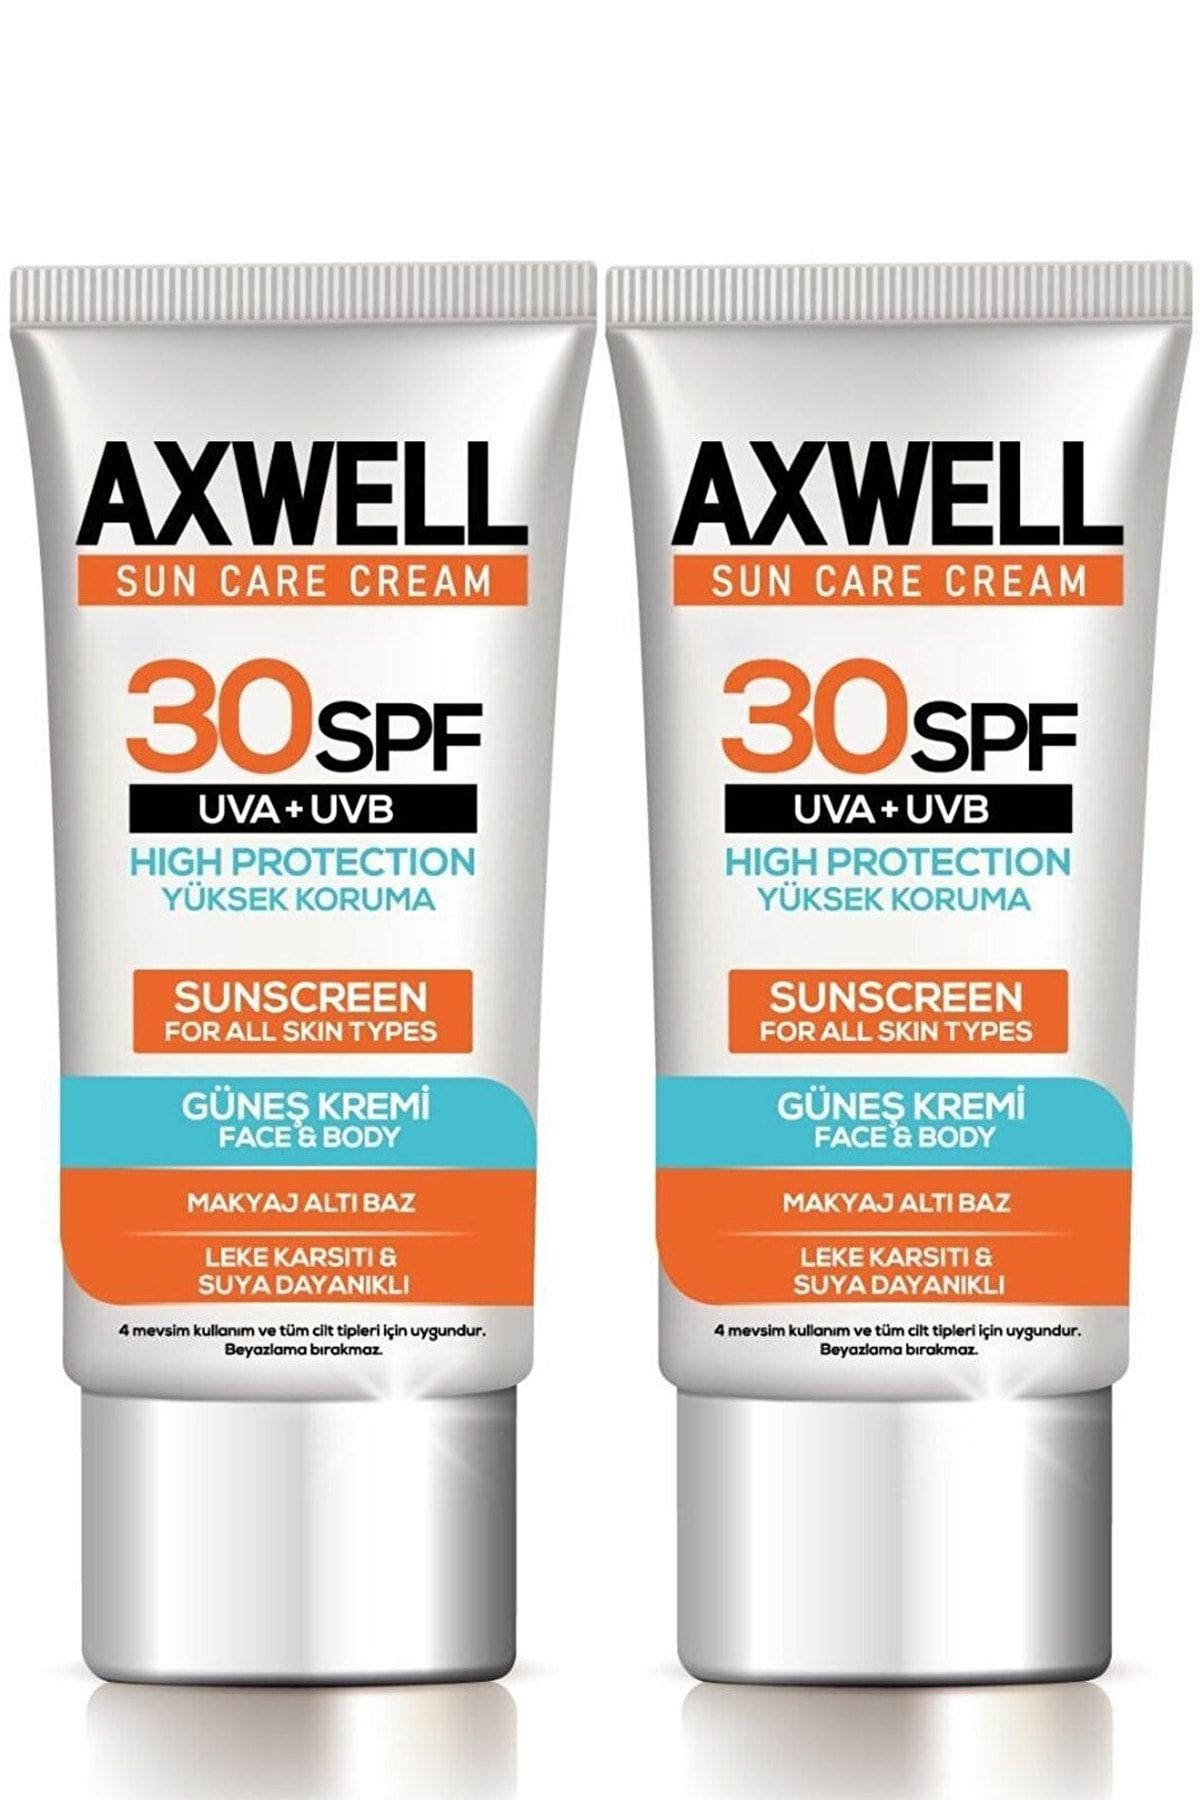 AXWELL Sun Care Cream Güneş Kremi Yüksek Koruma 30 Spf 50ml 2 Li Fırsat Seti